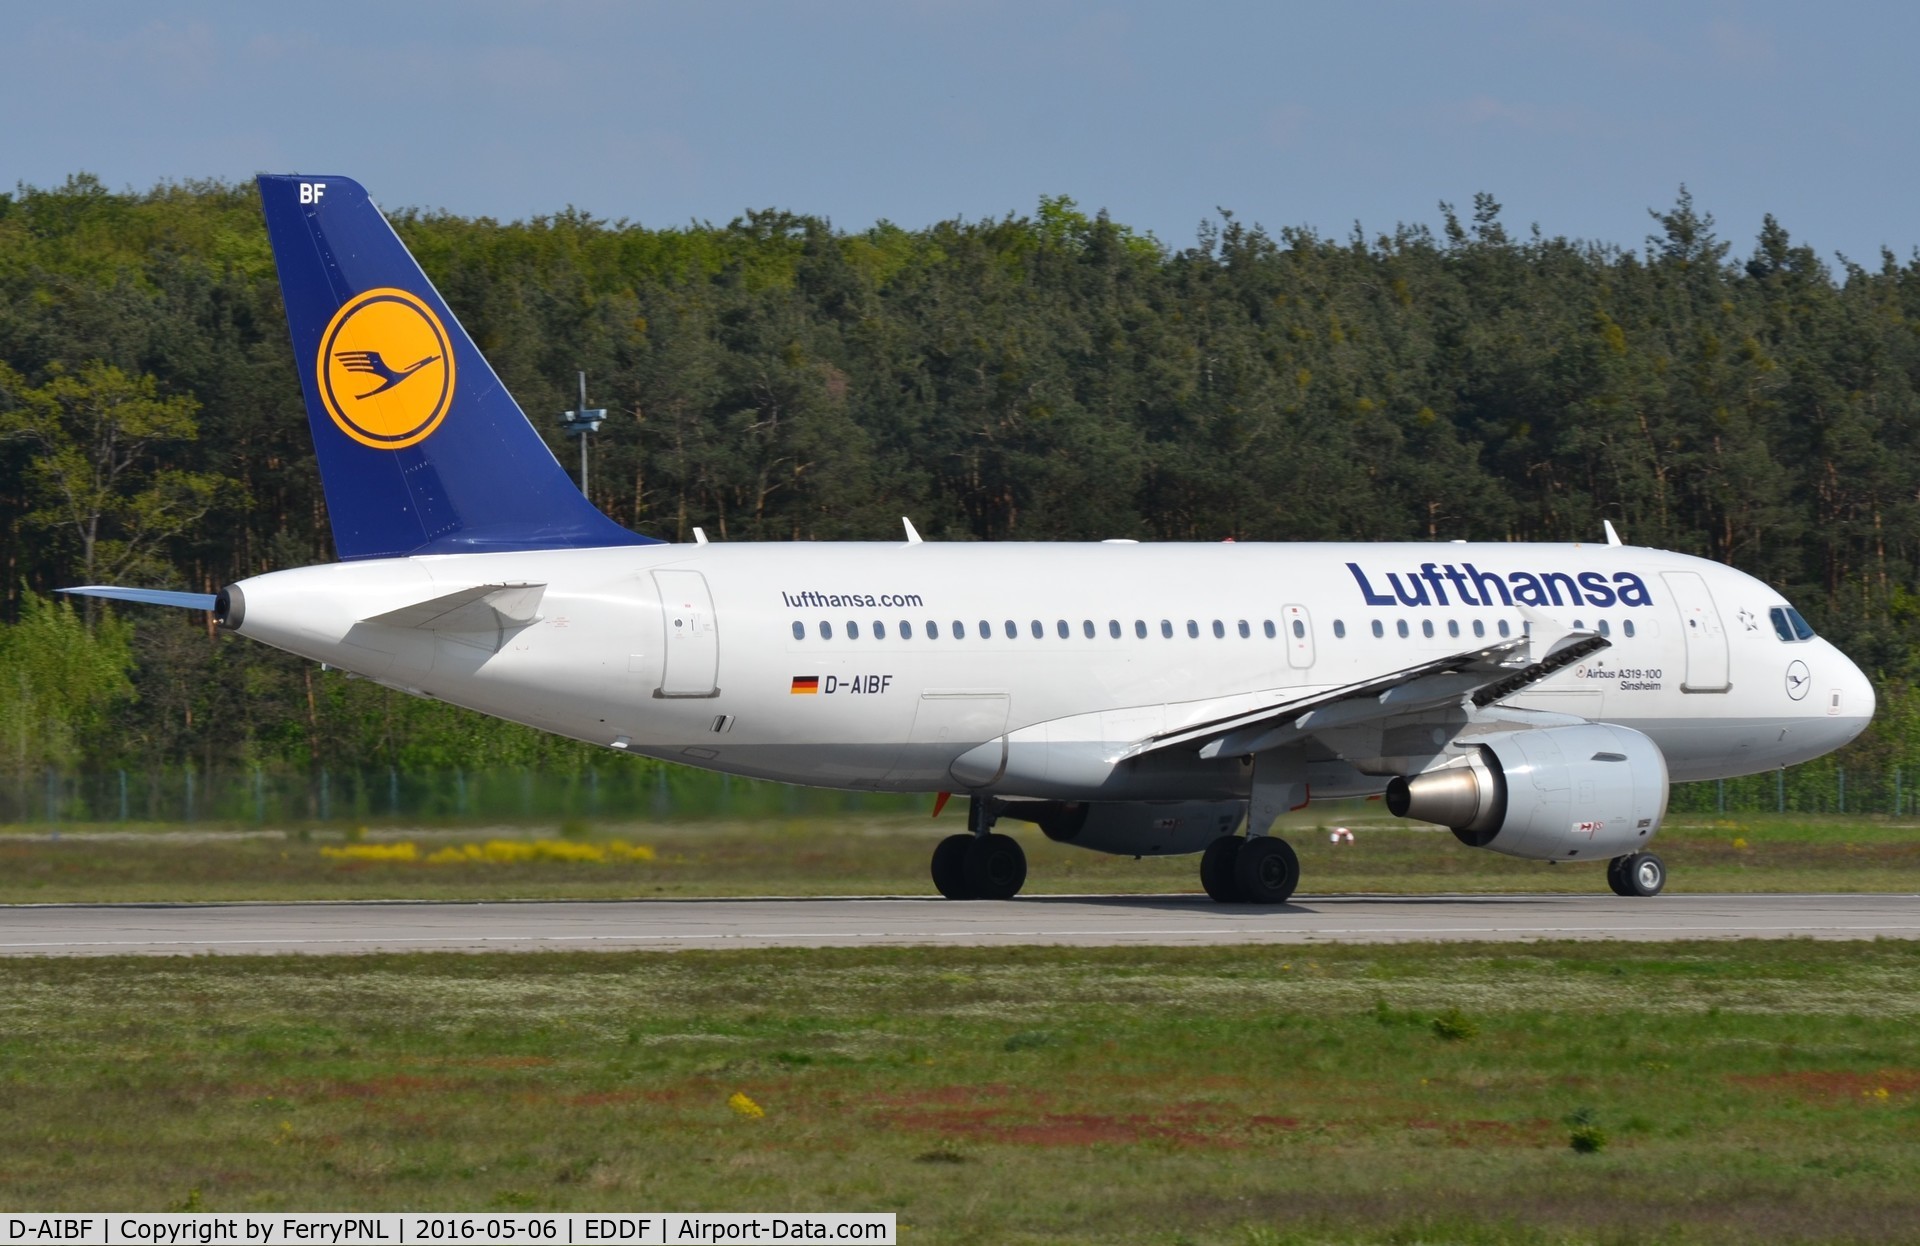 D-AIBF, 2011 Airbus A319-112 C/N 4796, Lufthansa A319 departing FRA